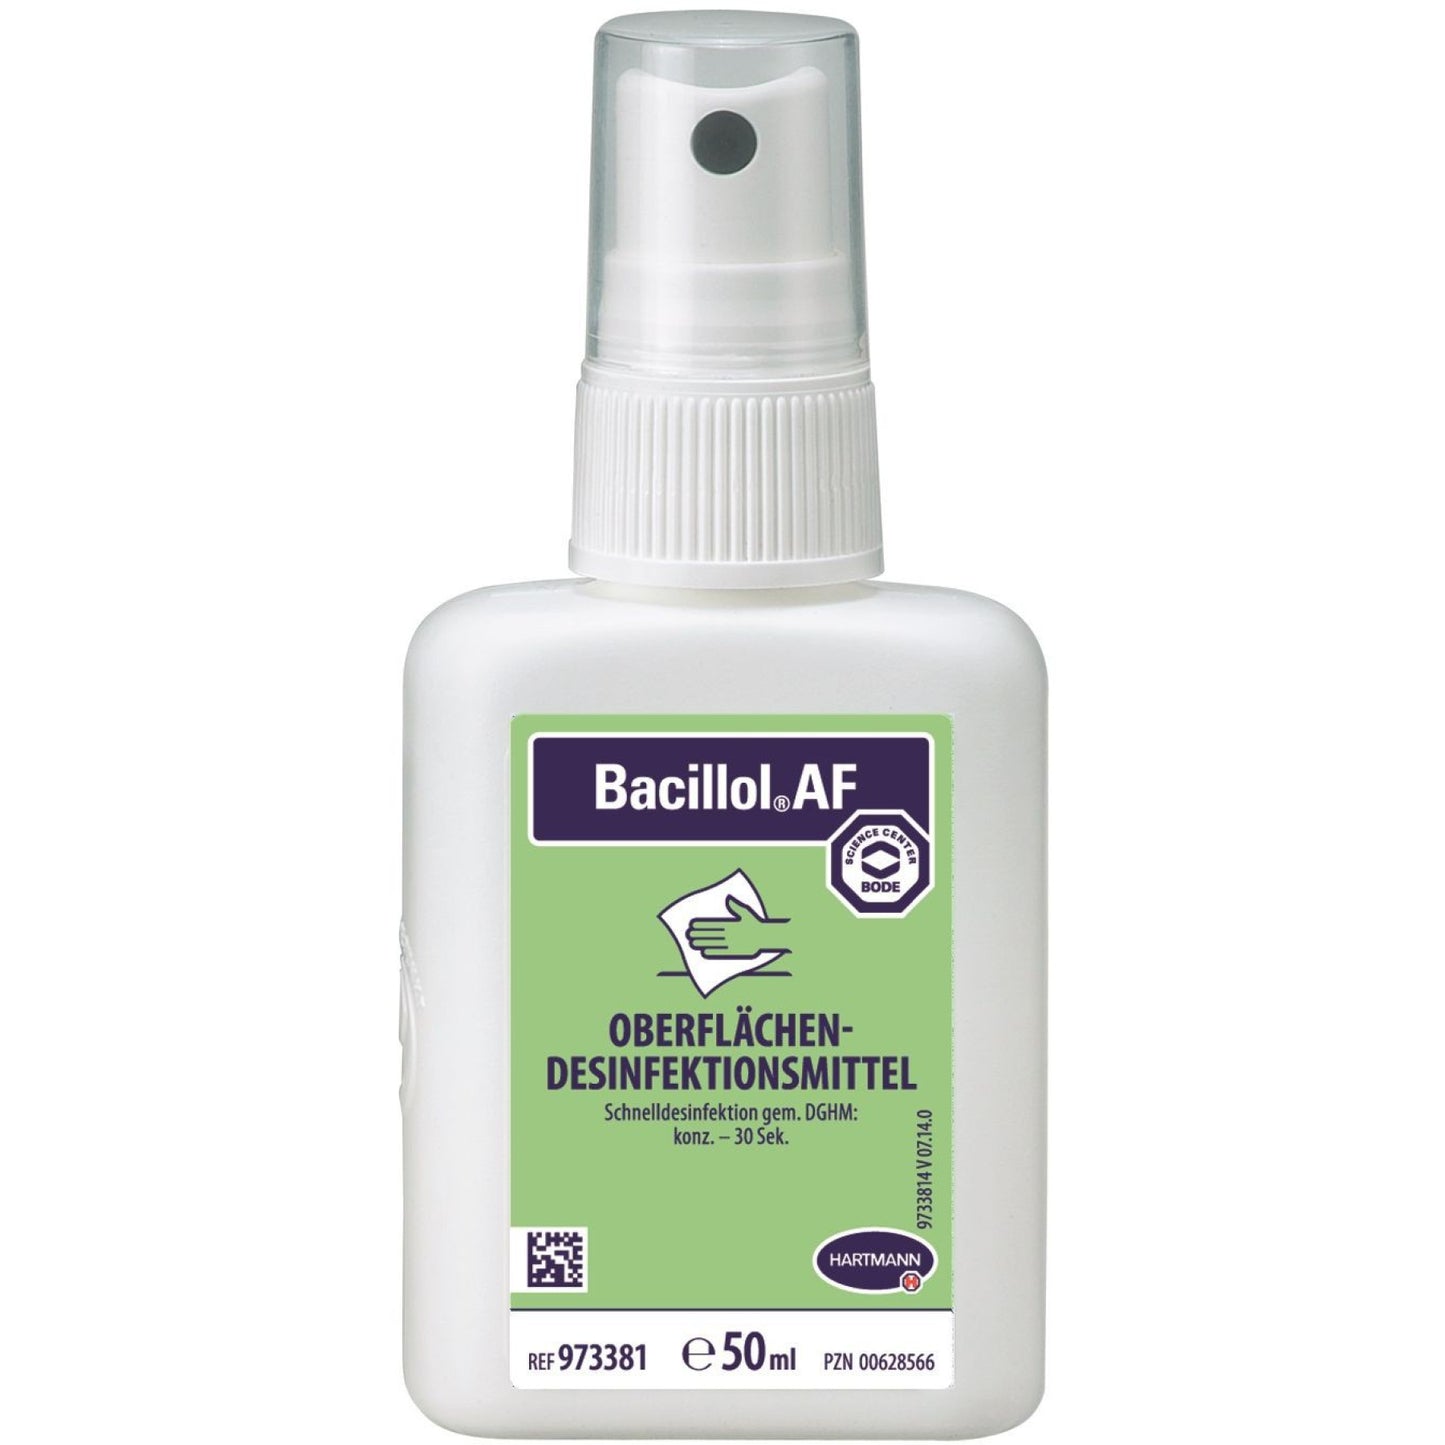 Bacillol AF - Flächendesinfektion, alkoholisches Schnelldesinfektionsmittel